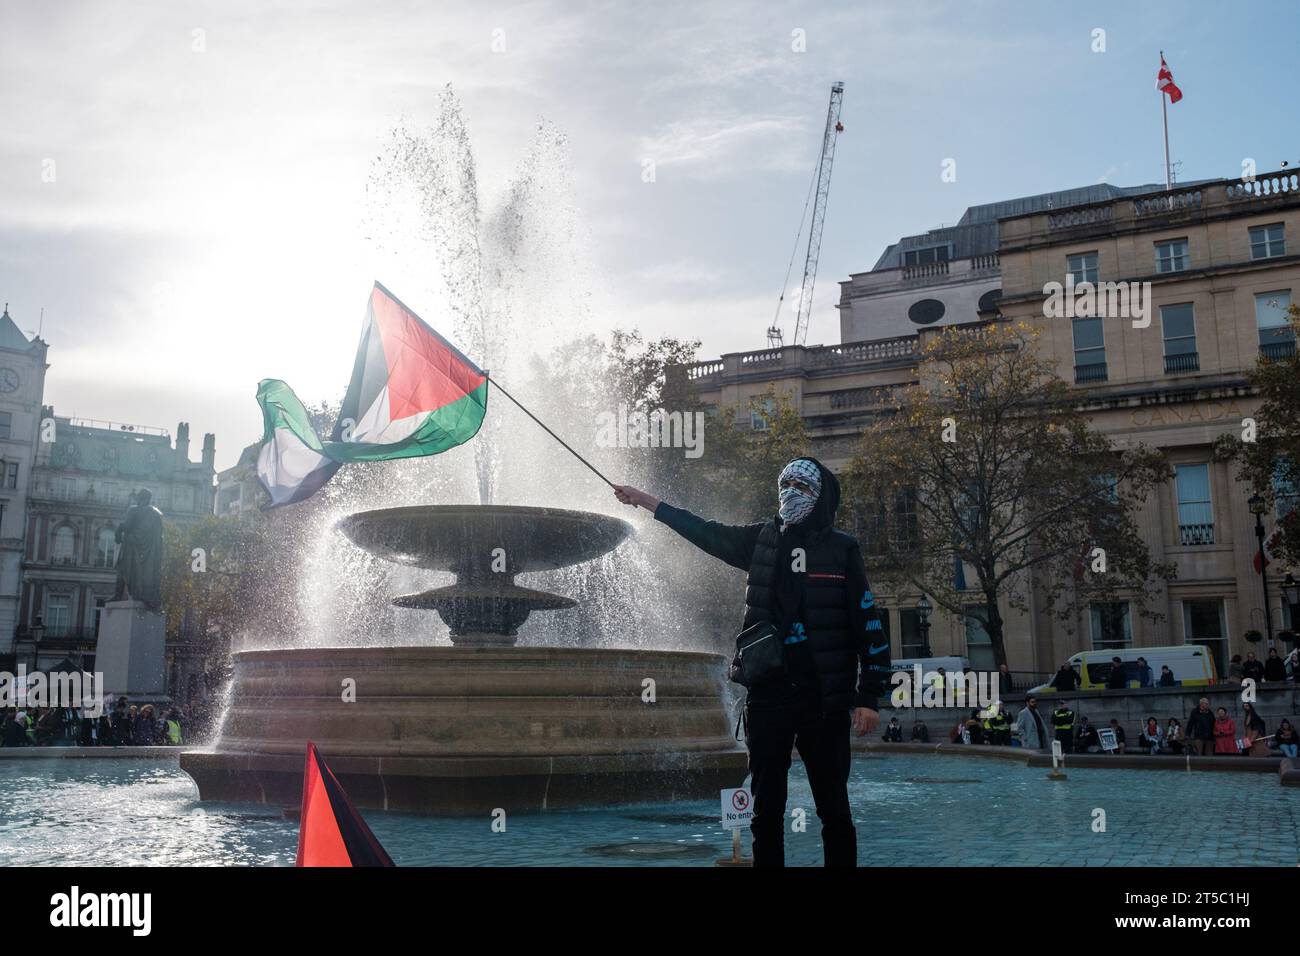 Les manifestants pro-palestiniens prennent le contrôle de Trafalgar Square en continuant de réclamer un cessez-le-feu à Gaza. Londres, Royaume-Uni, 05/11/2023 Ehimetalor Unuabona/Alamy Live News Banque D'Images